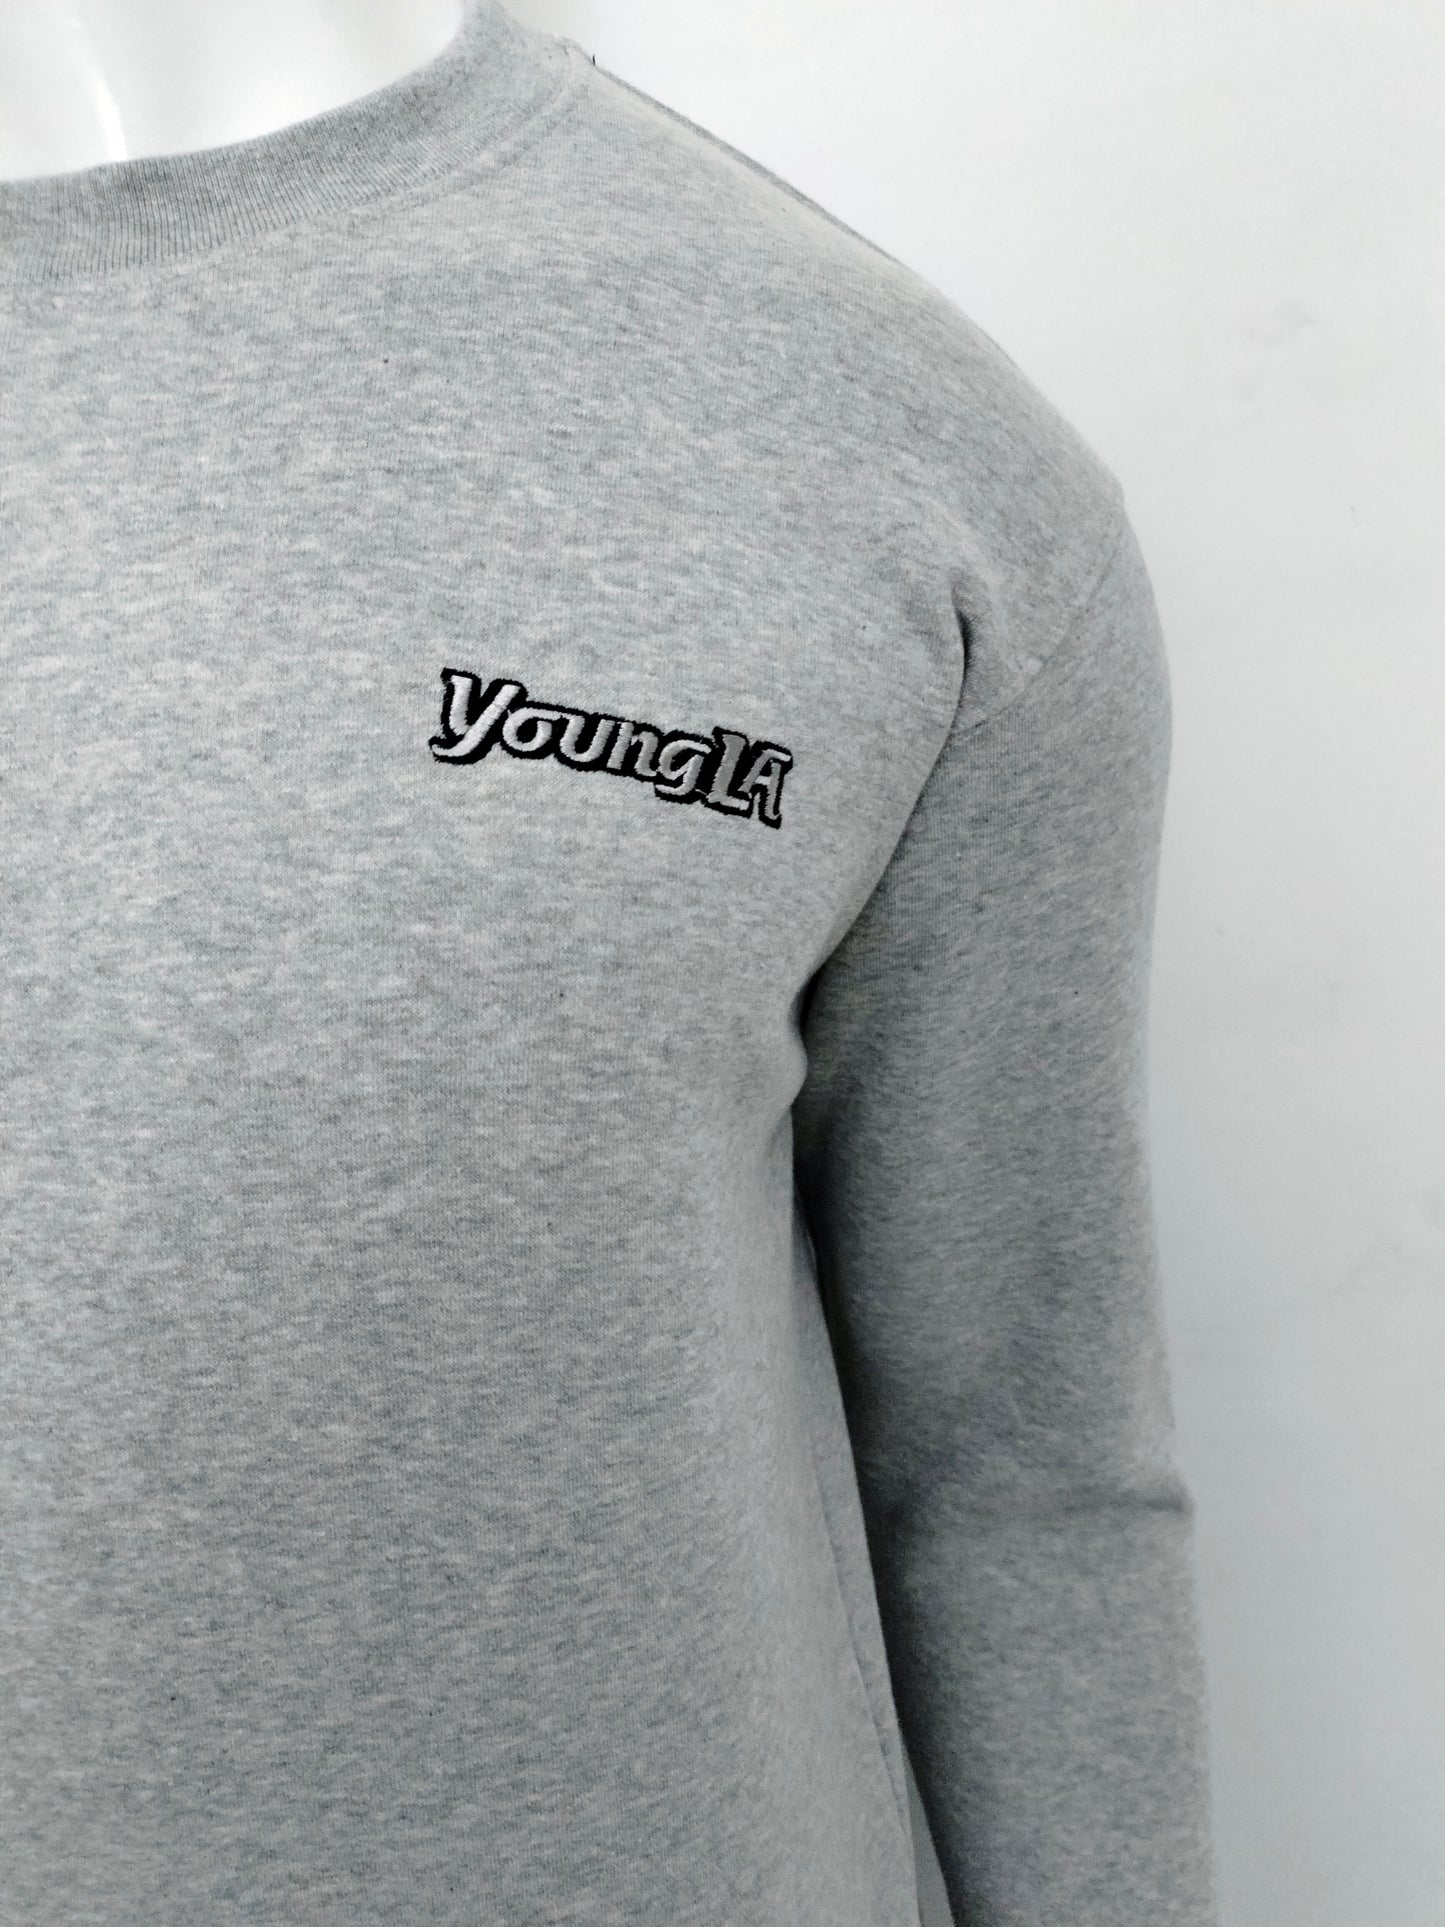 YoungLA Crewnecks Sweatshirt